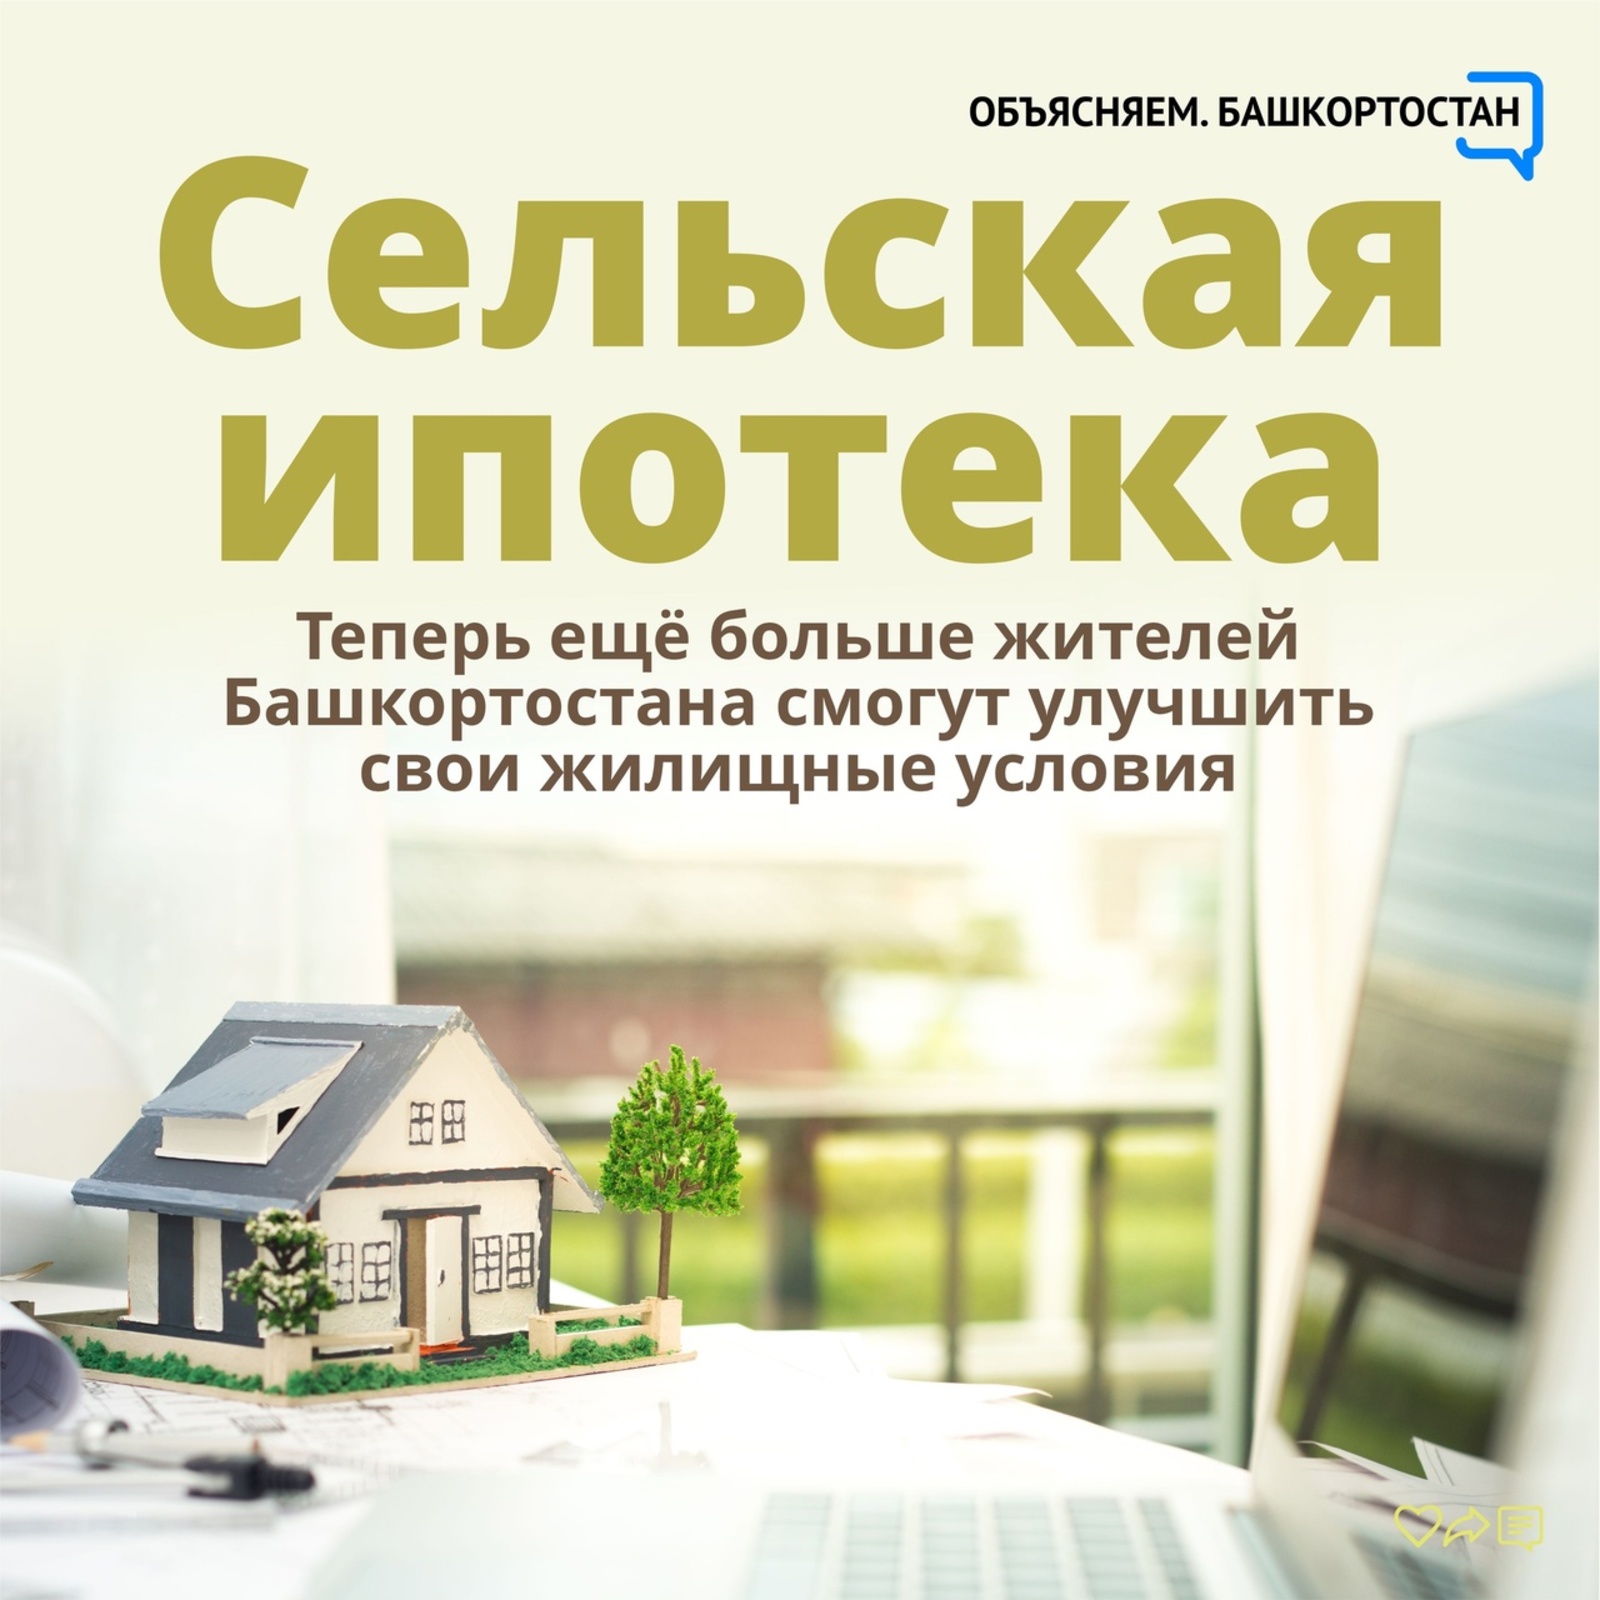 Жители Башкортостана смогут улучшить свои жилищные условия